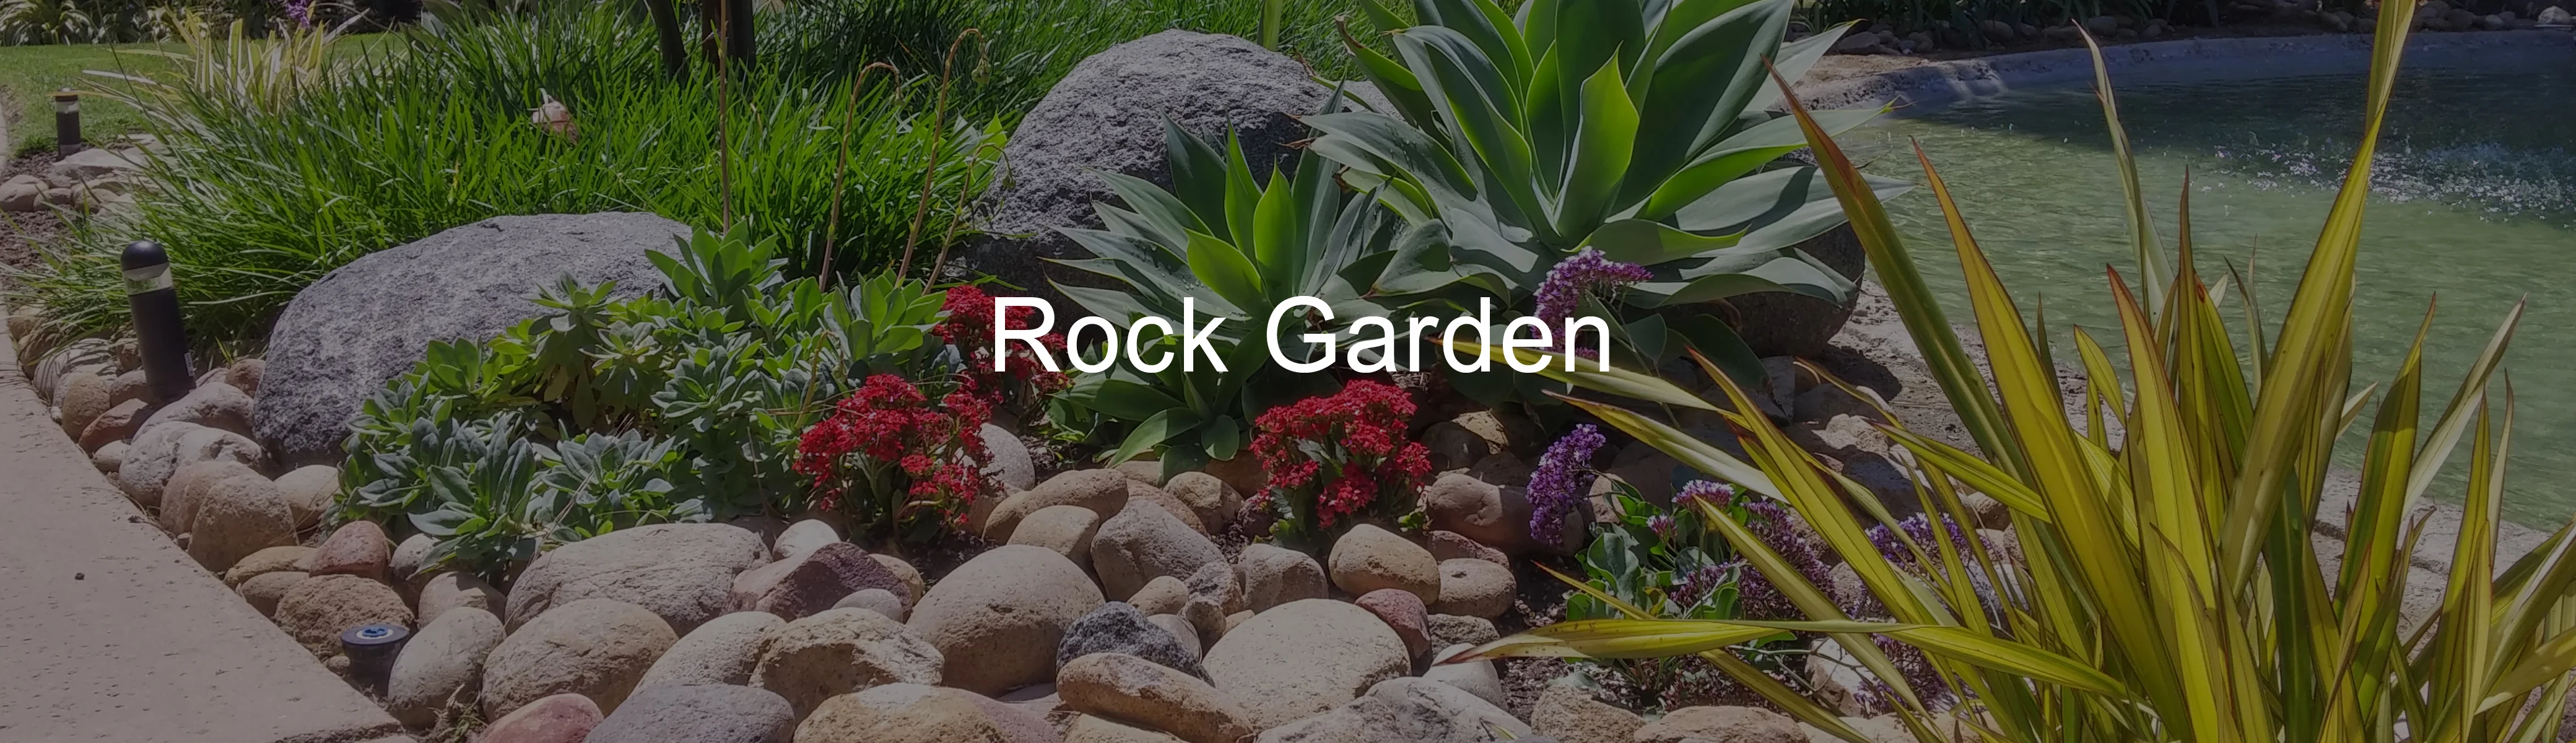 Rock garden maintenance